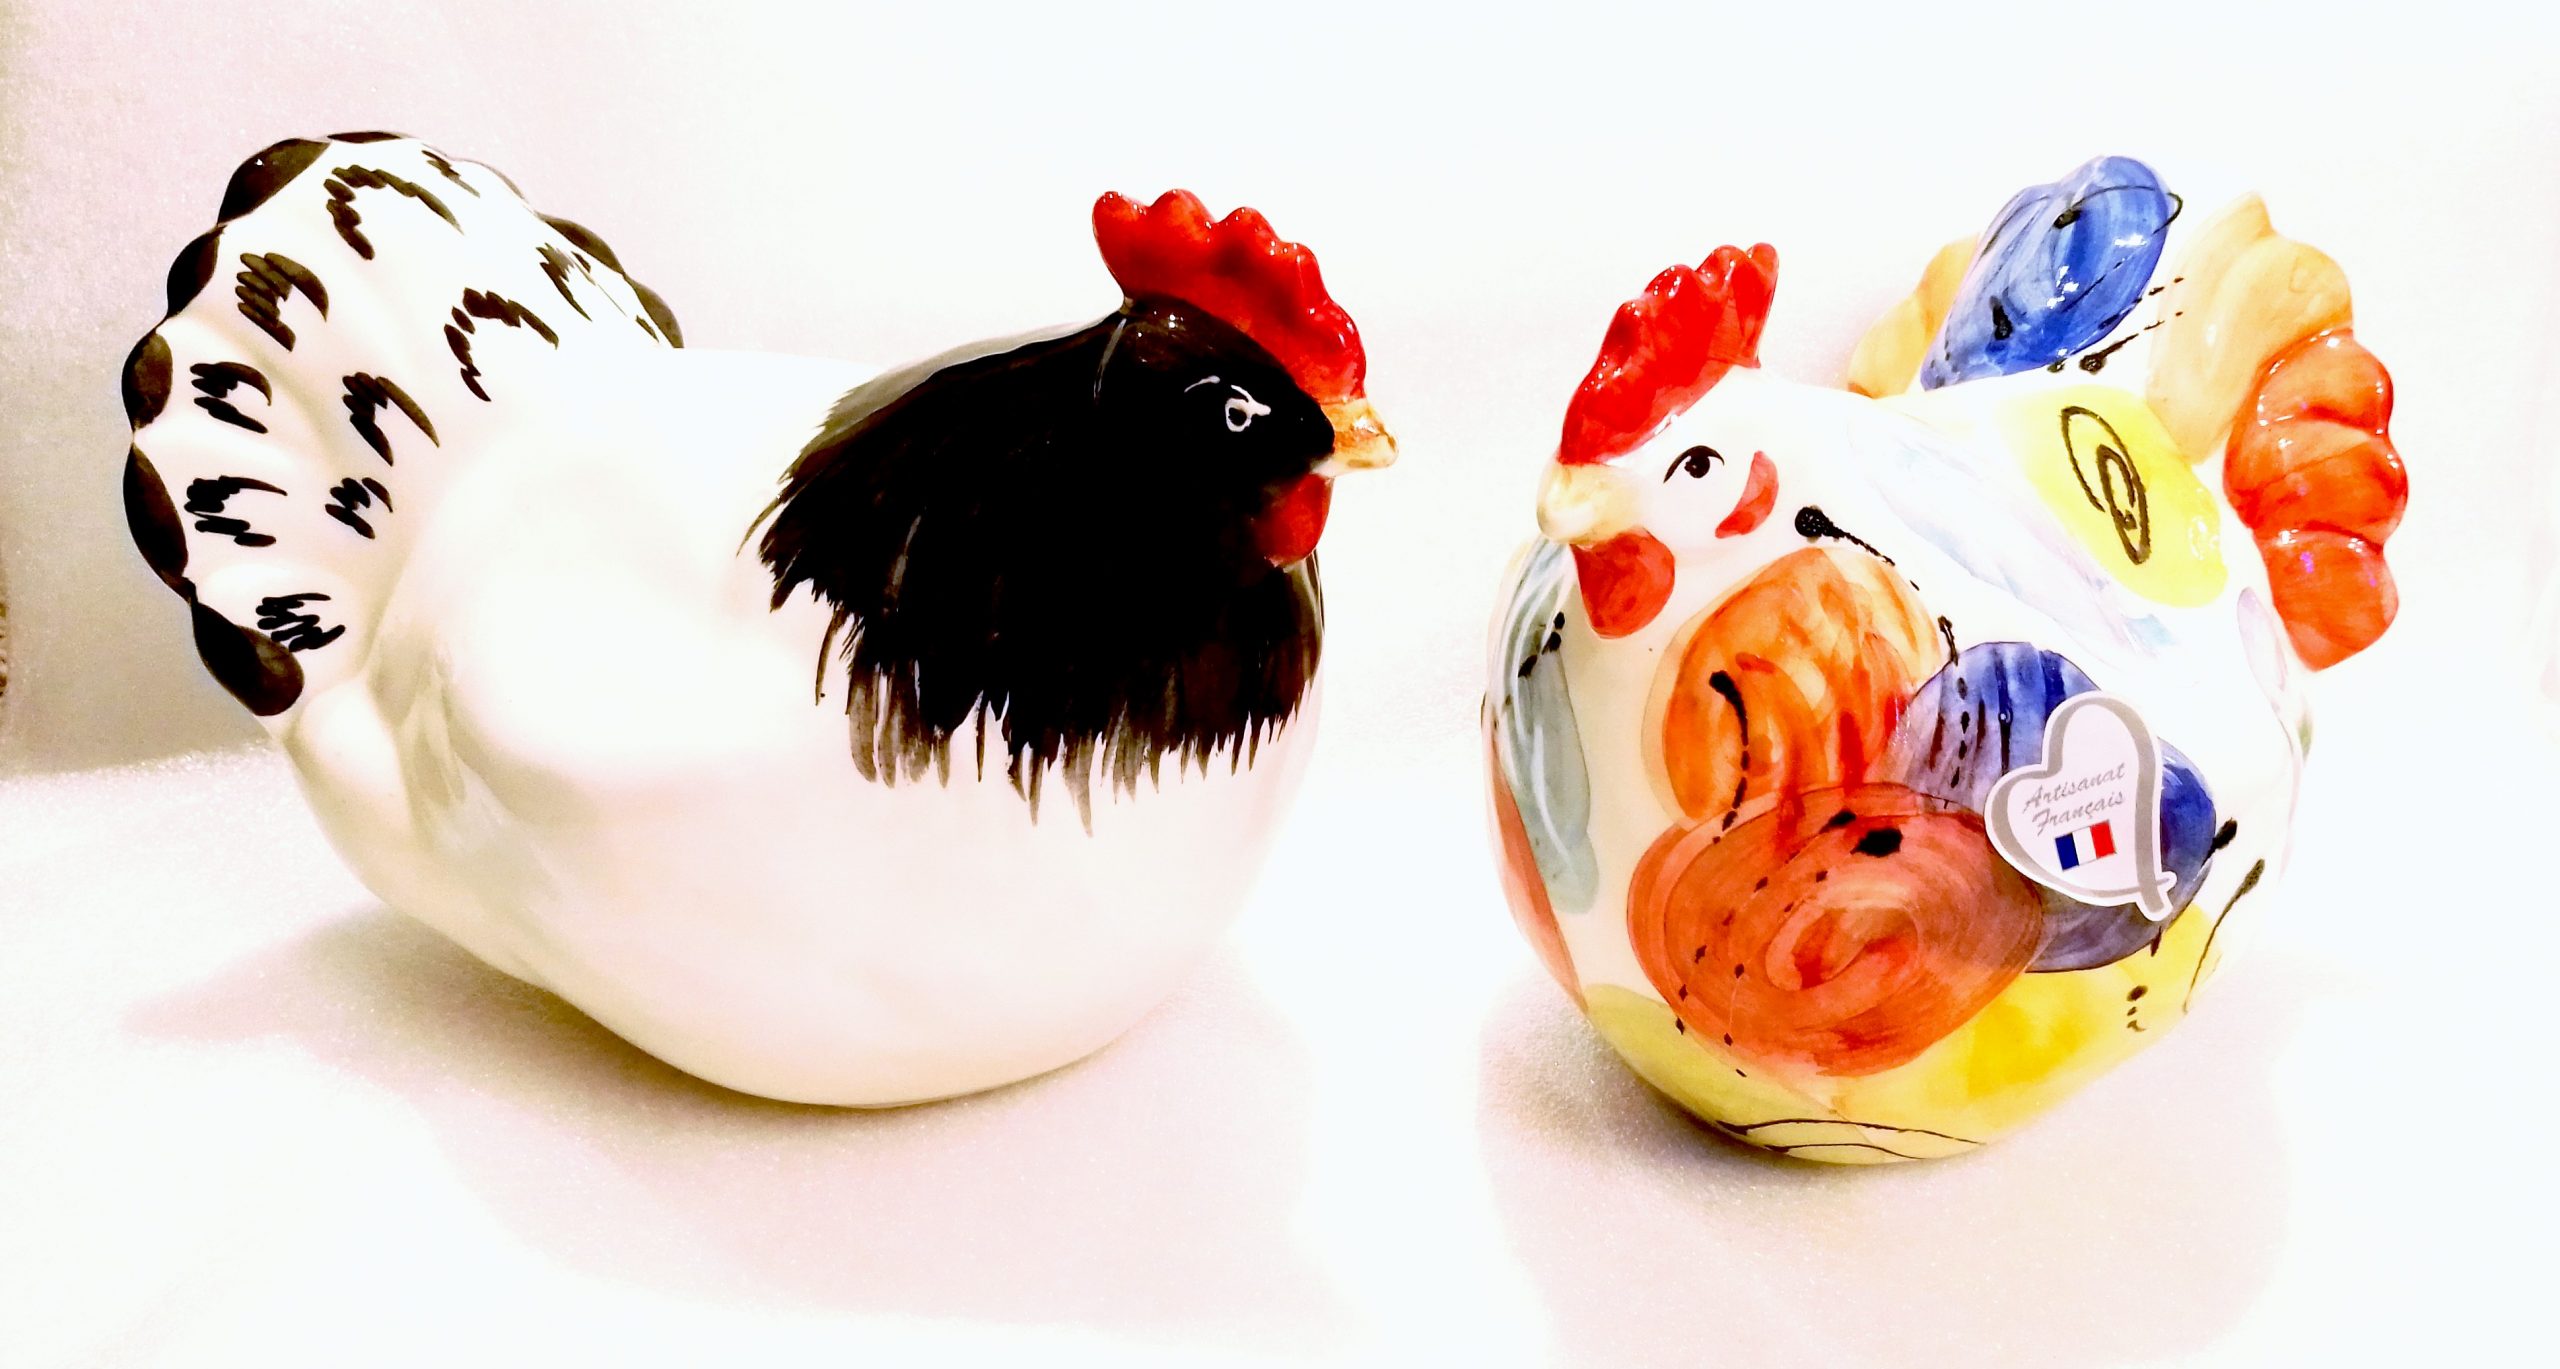 Poule et coq en céramique - medium - Webshop - Matelma